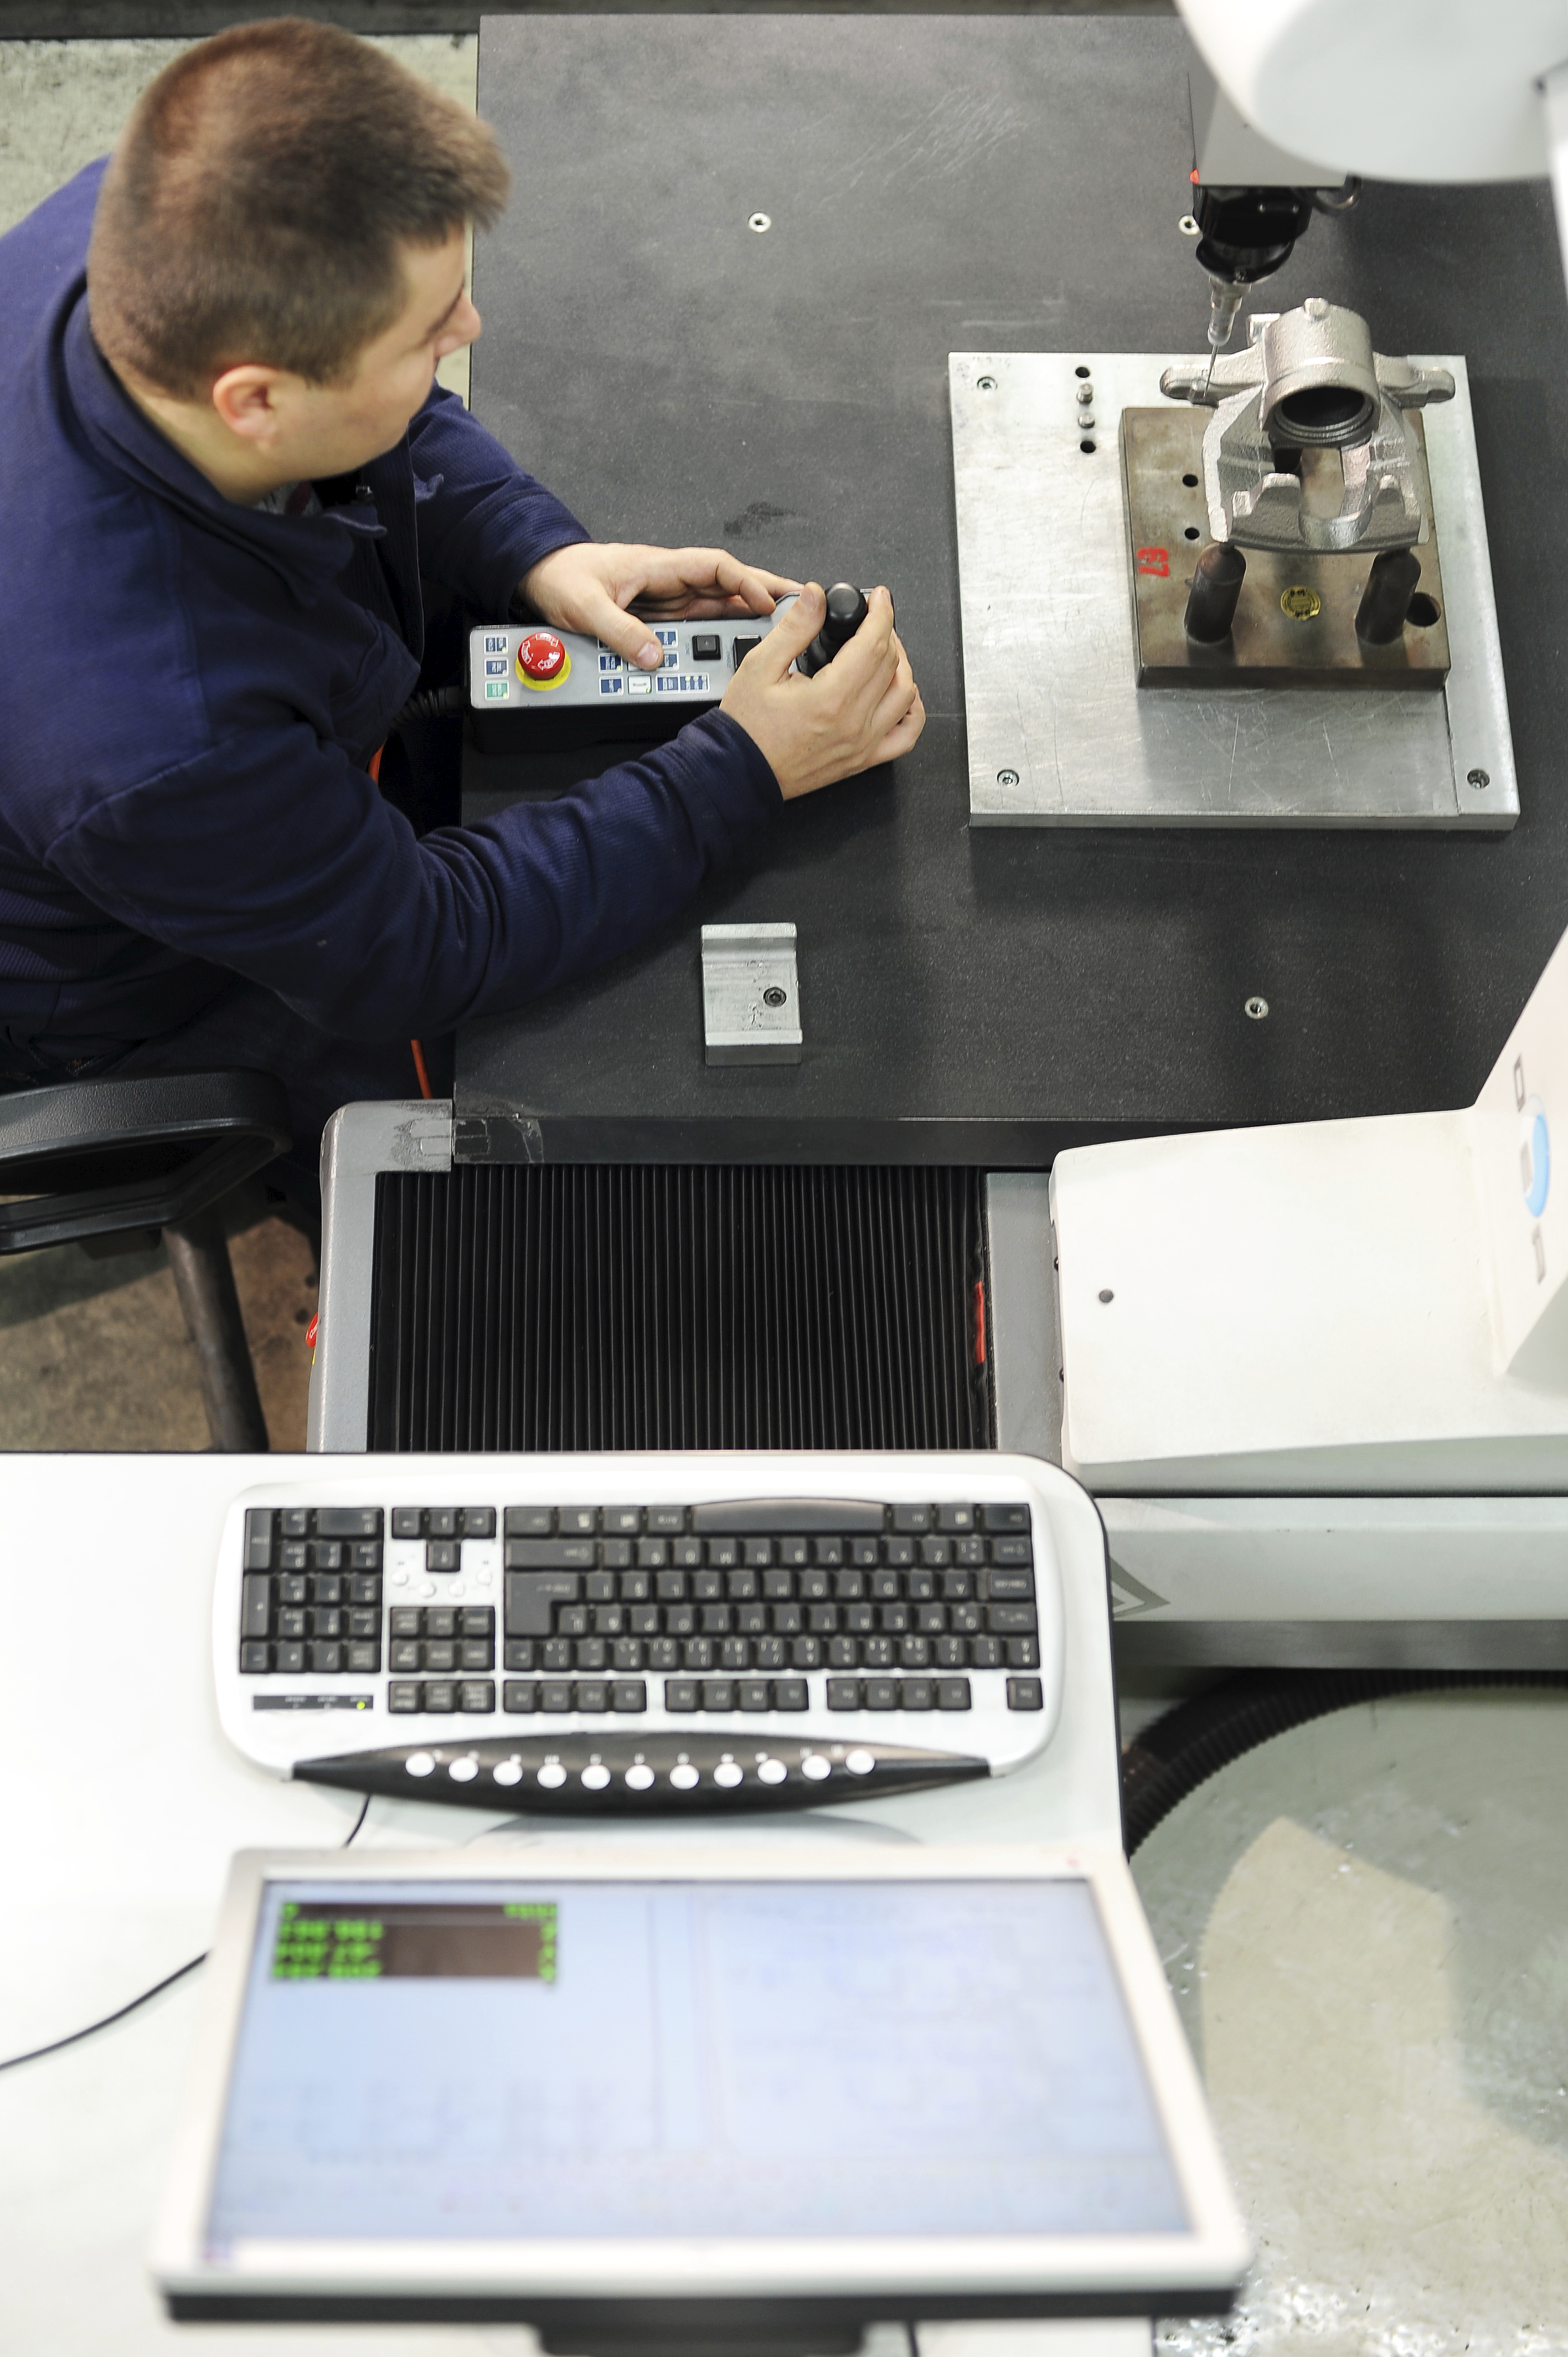 Vista superior del hombre midiendo una pieza metálica pequeña con CMM tradicional de contacto junto a la computadora